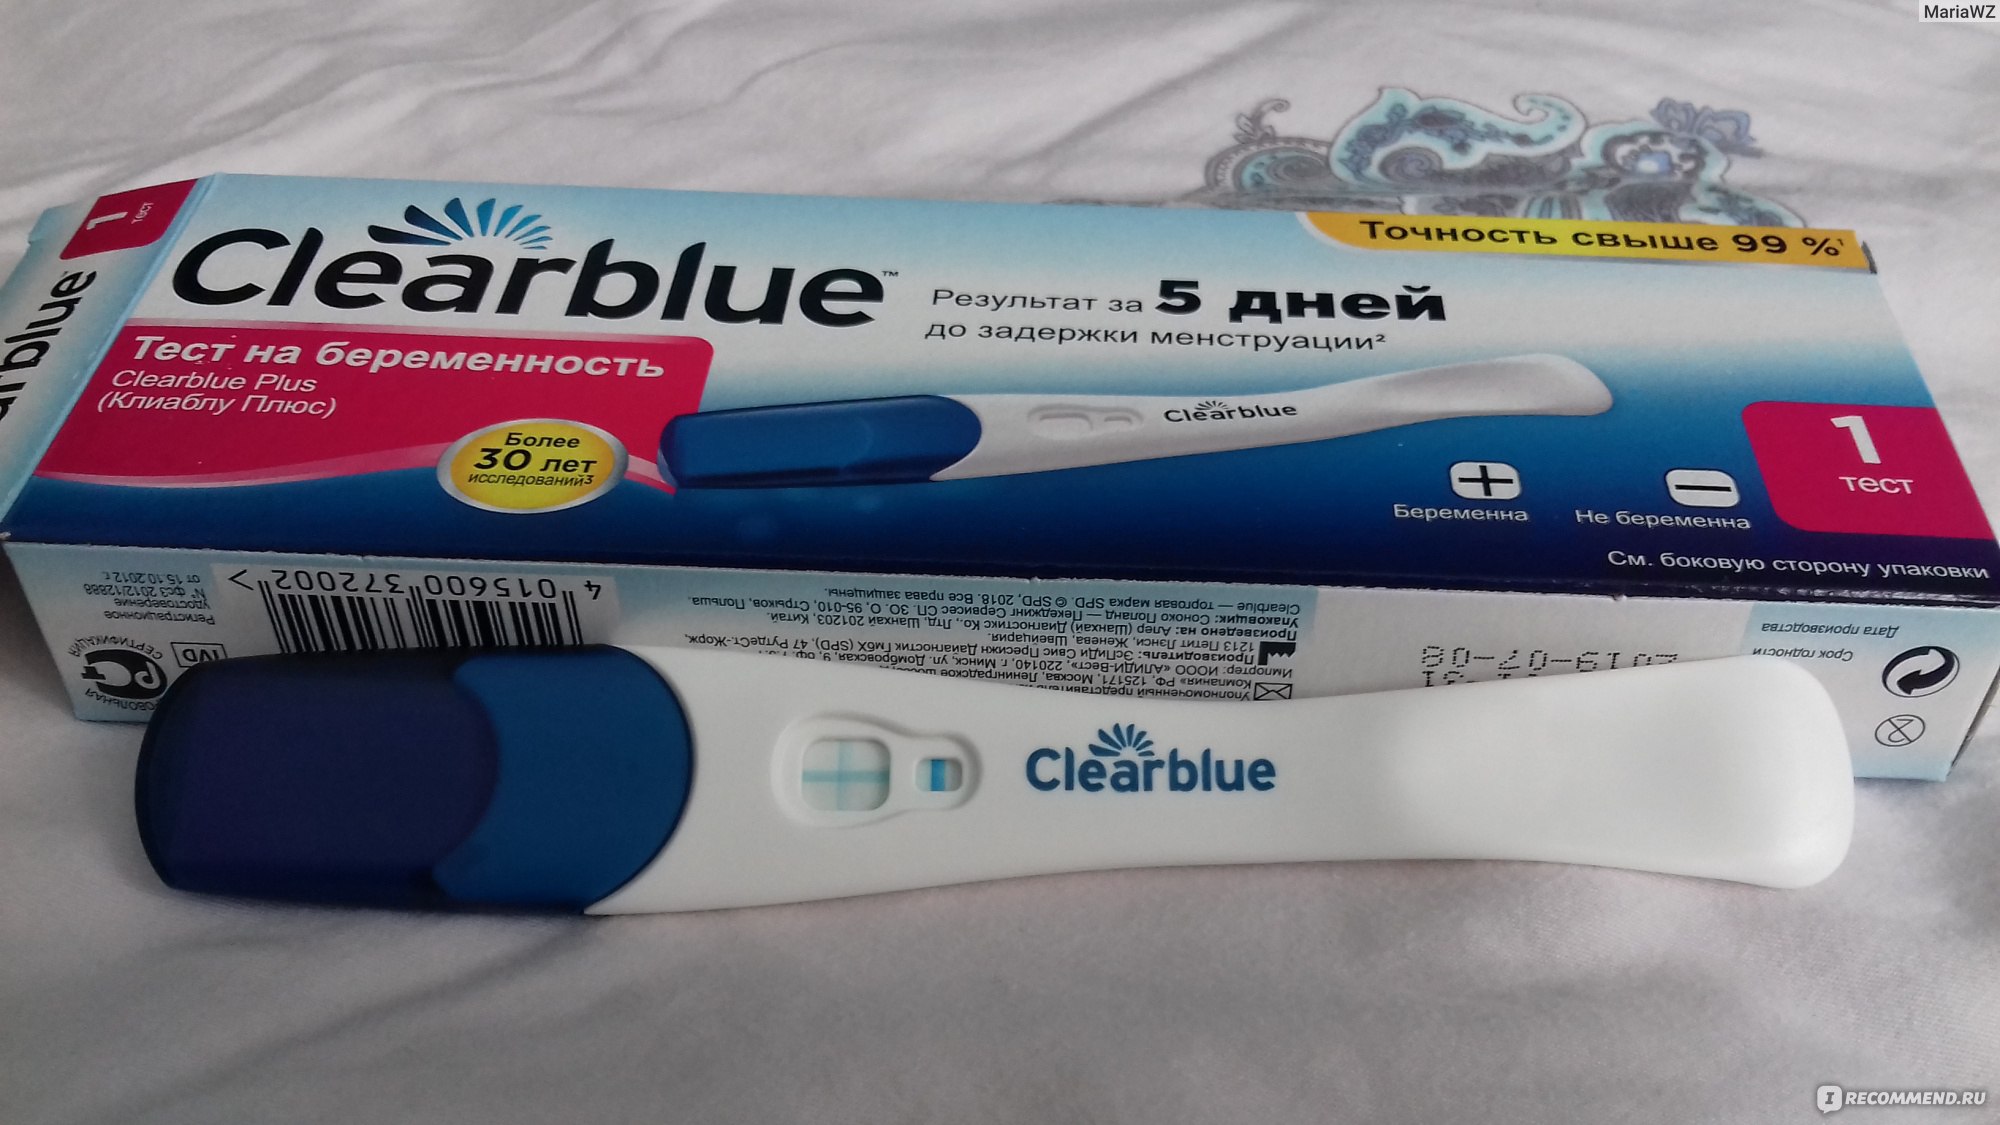 Клеар блю тест на беременность до задержки. Тест на беременность Clearblue. Тест Plus на беременность, 1 шт., Clearblue. Тест Clearblue за 5 дней. Clearblue тест на беременность 5 дней до задержки.